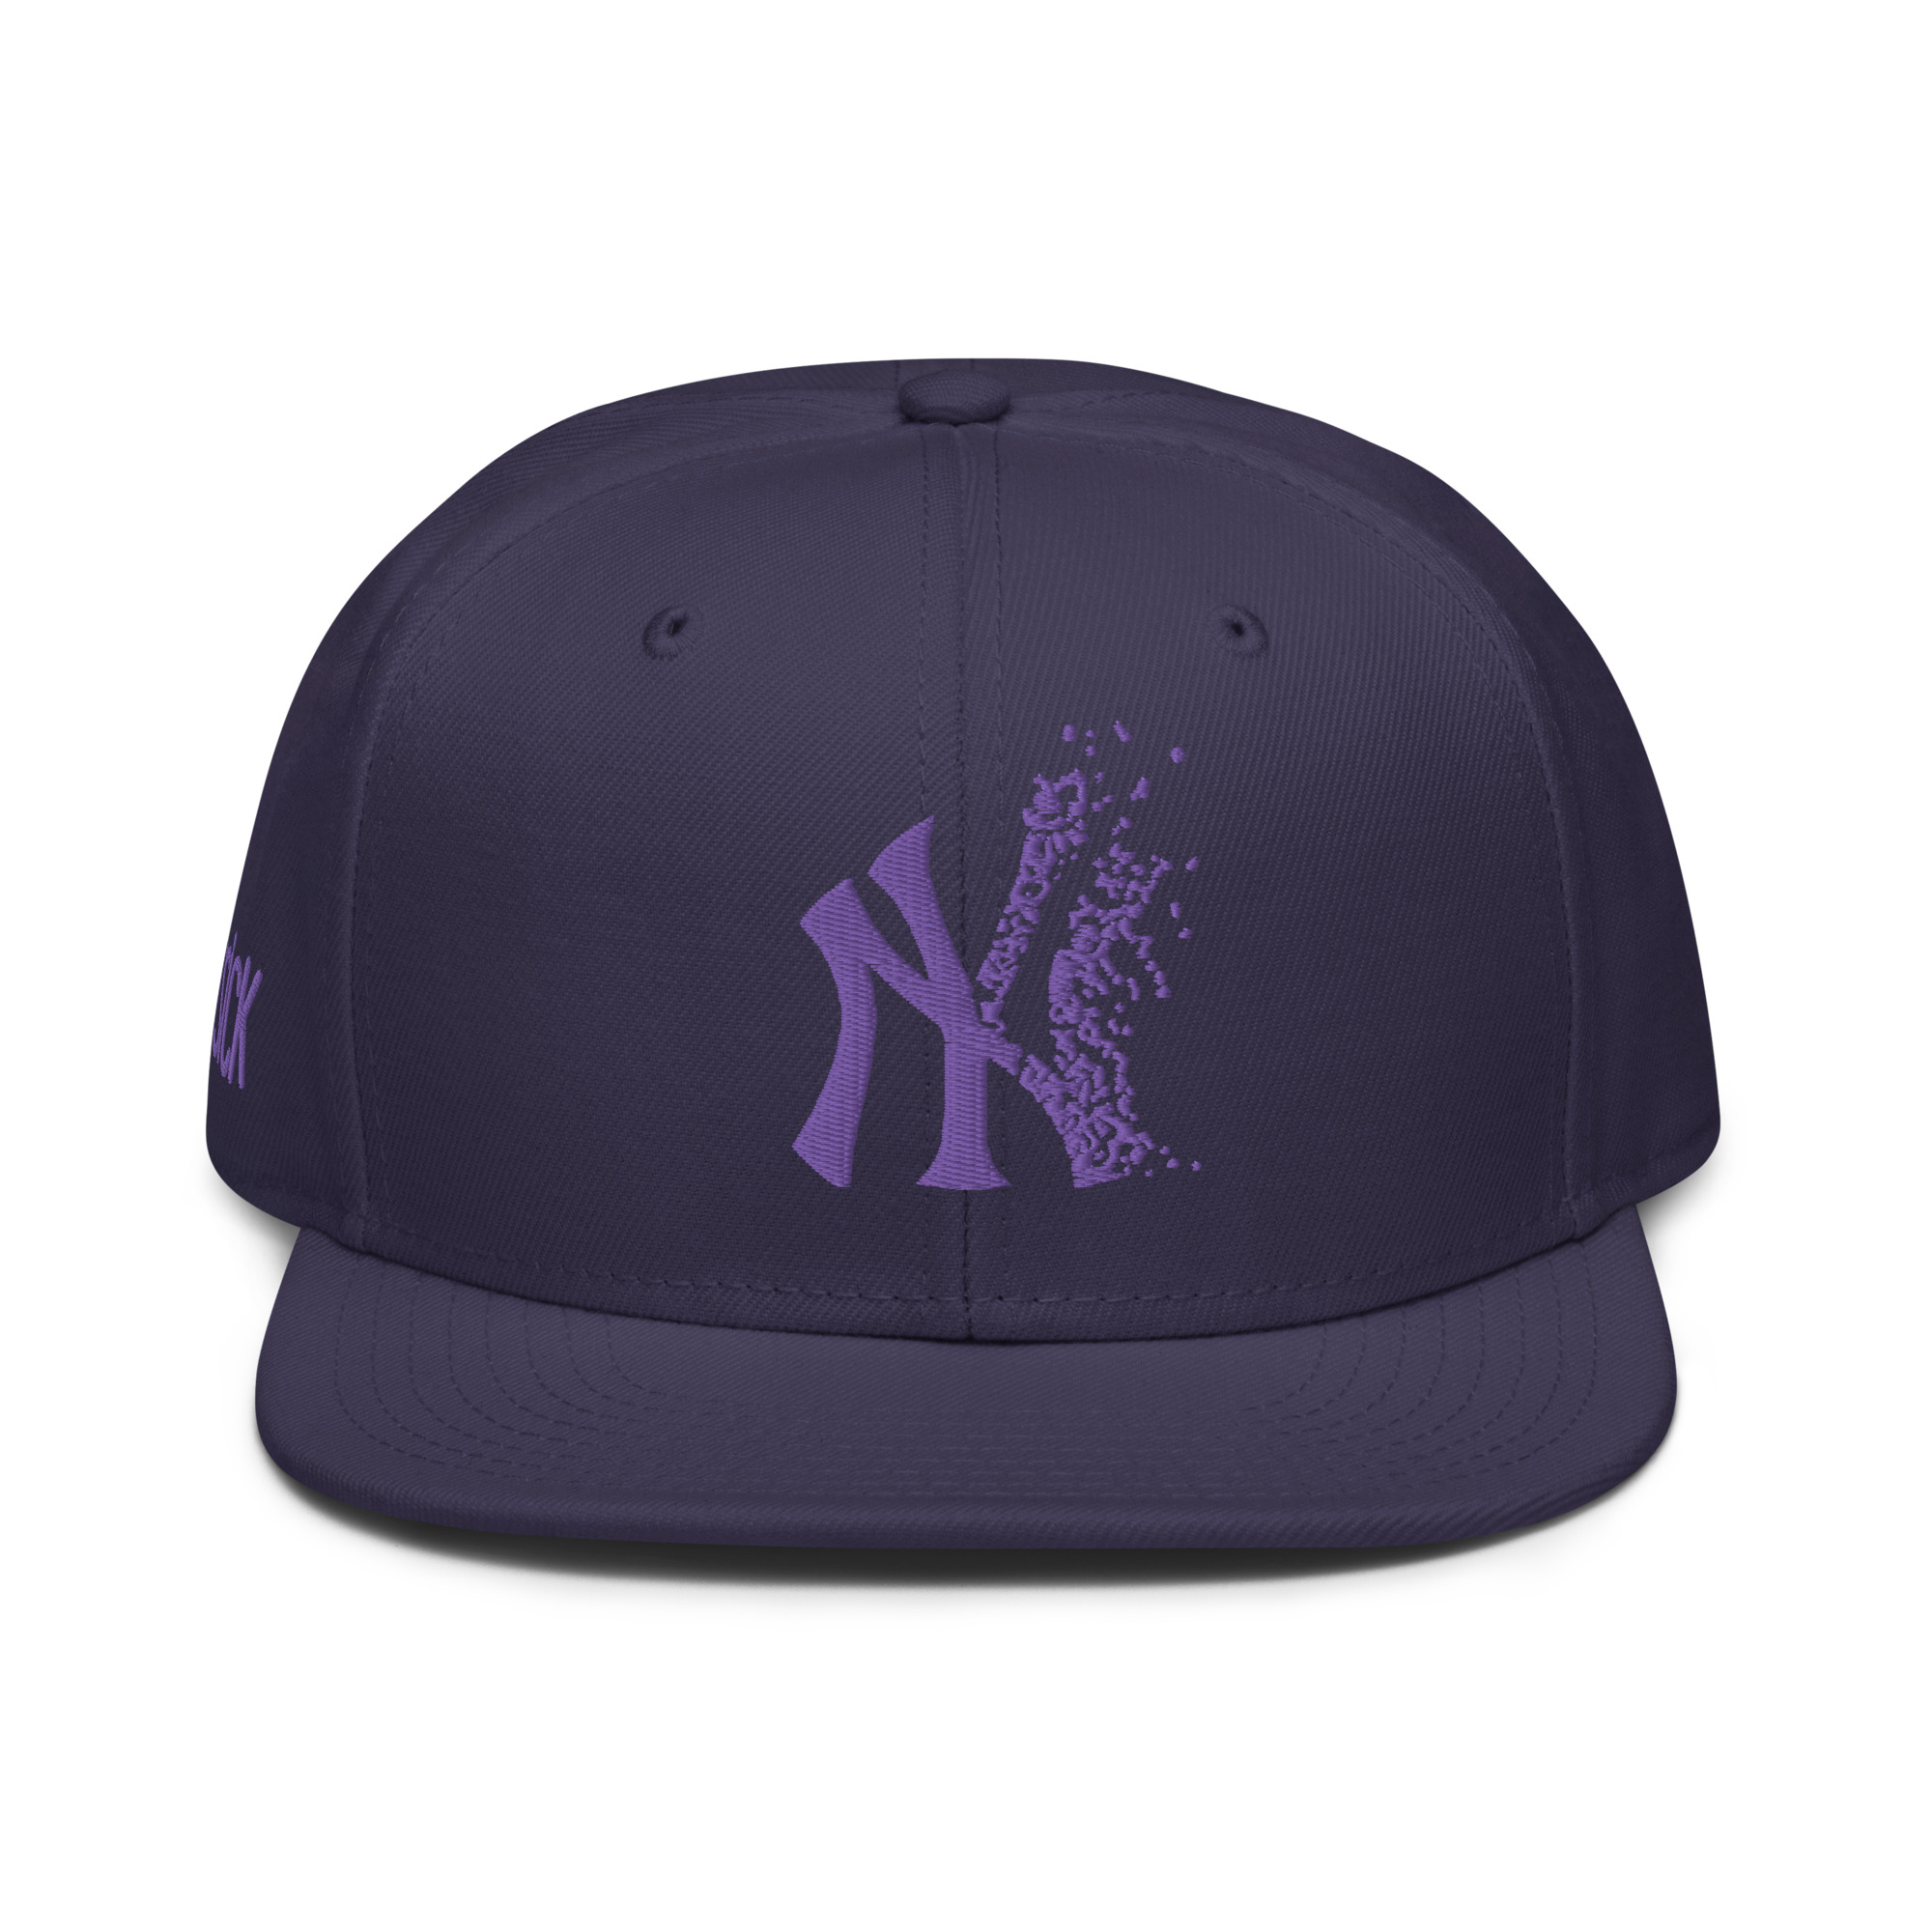 NY Yankees snapback hat